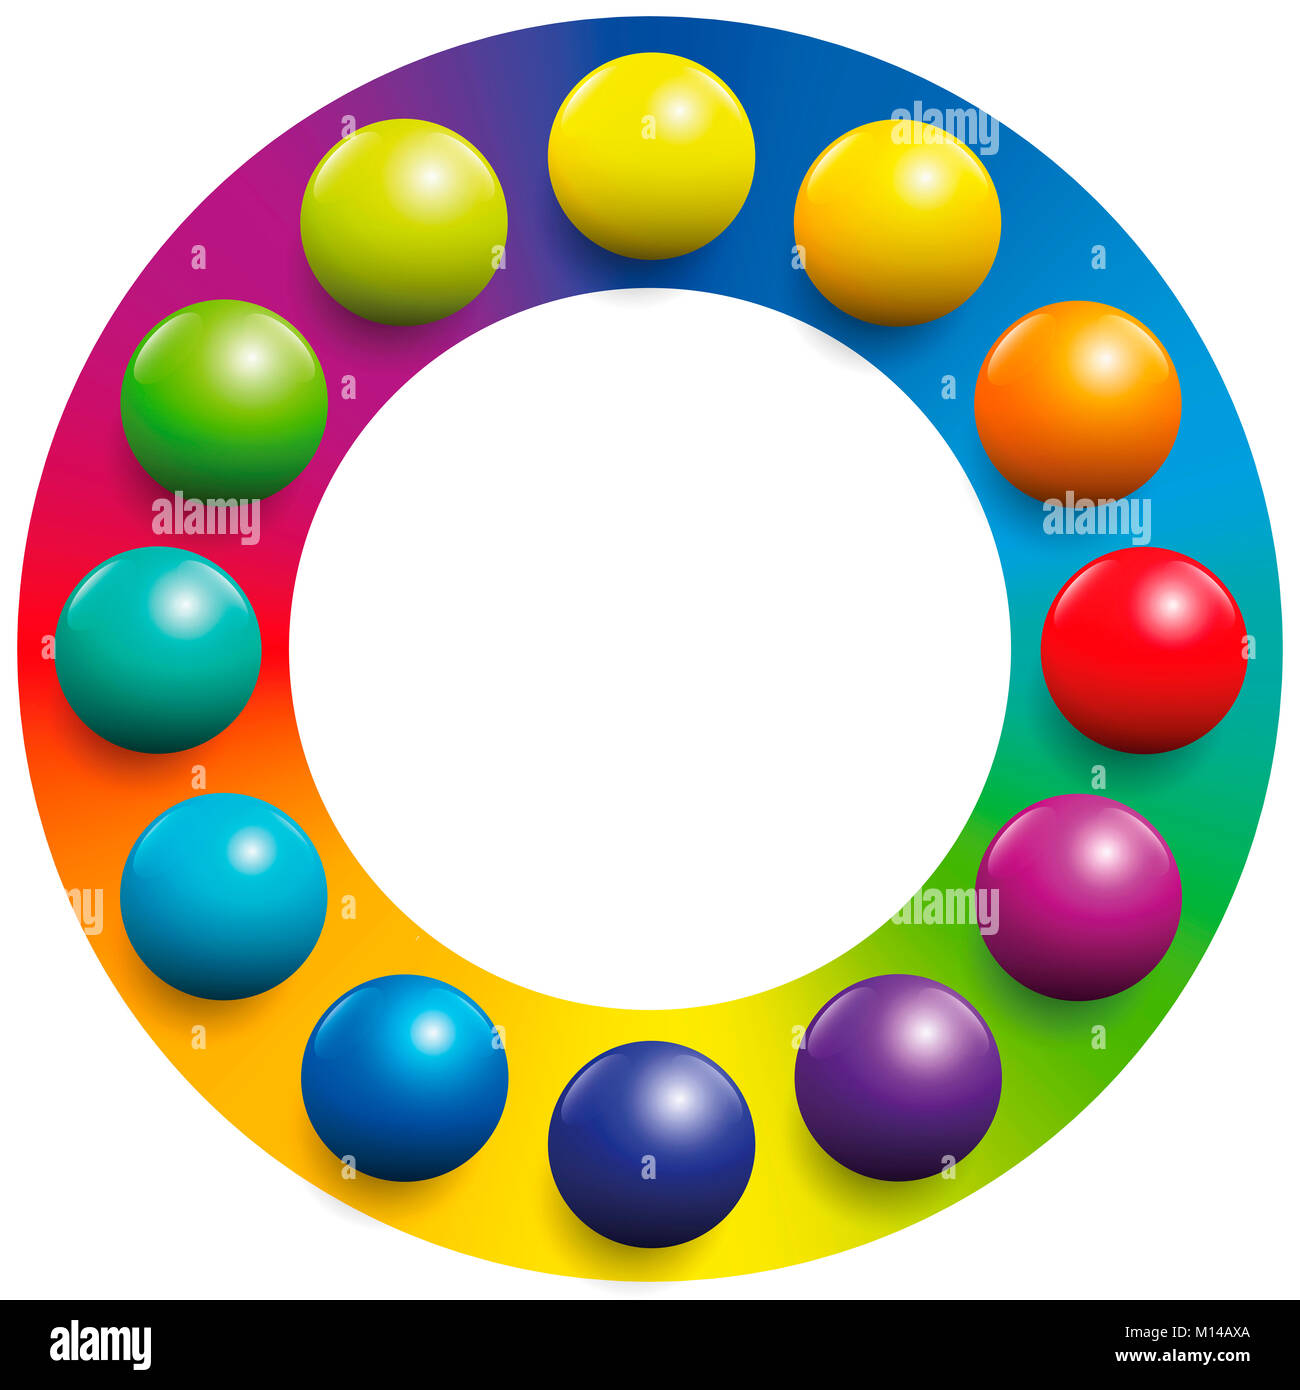 Espectro de color - doce balones colocados sobre los respectivos colores complementarios de un círculo de color arcoiris para aumentar su contraste. Foto de stock